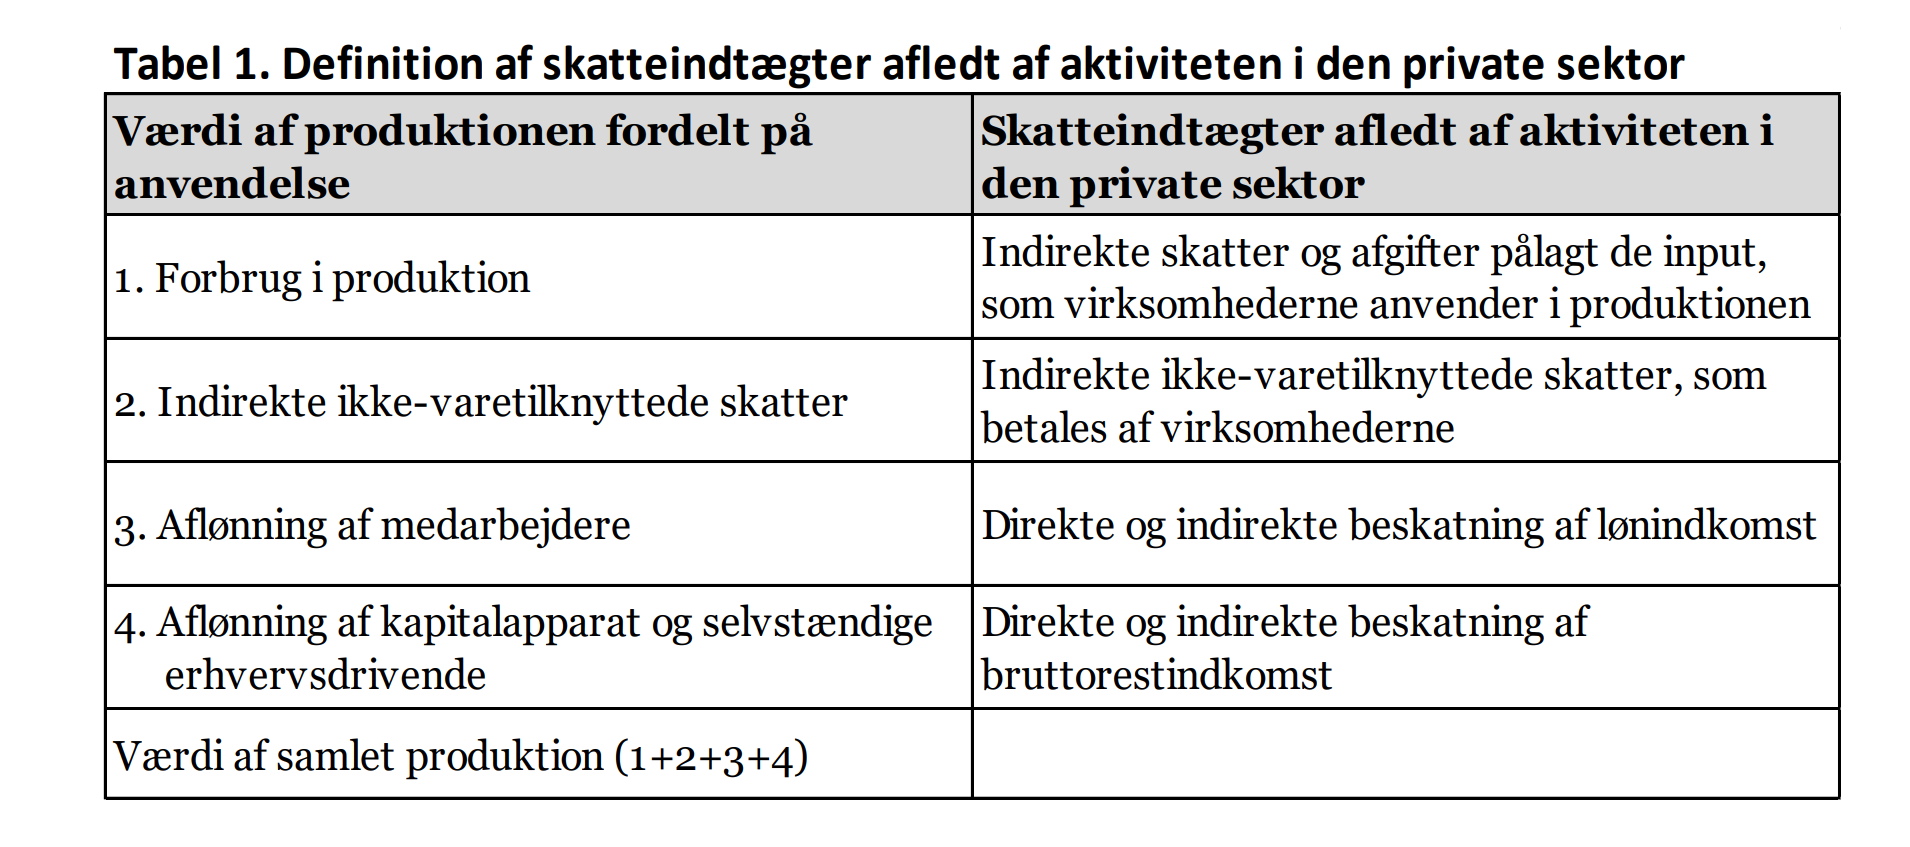 Tabel 1. Definition af skatteindtægter afledt af aktiviteten i den private sektor